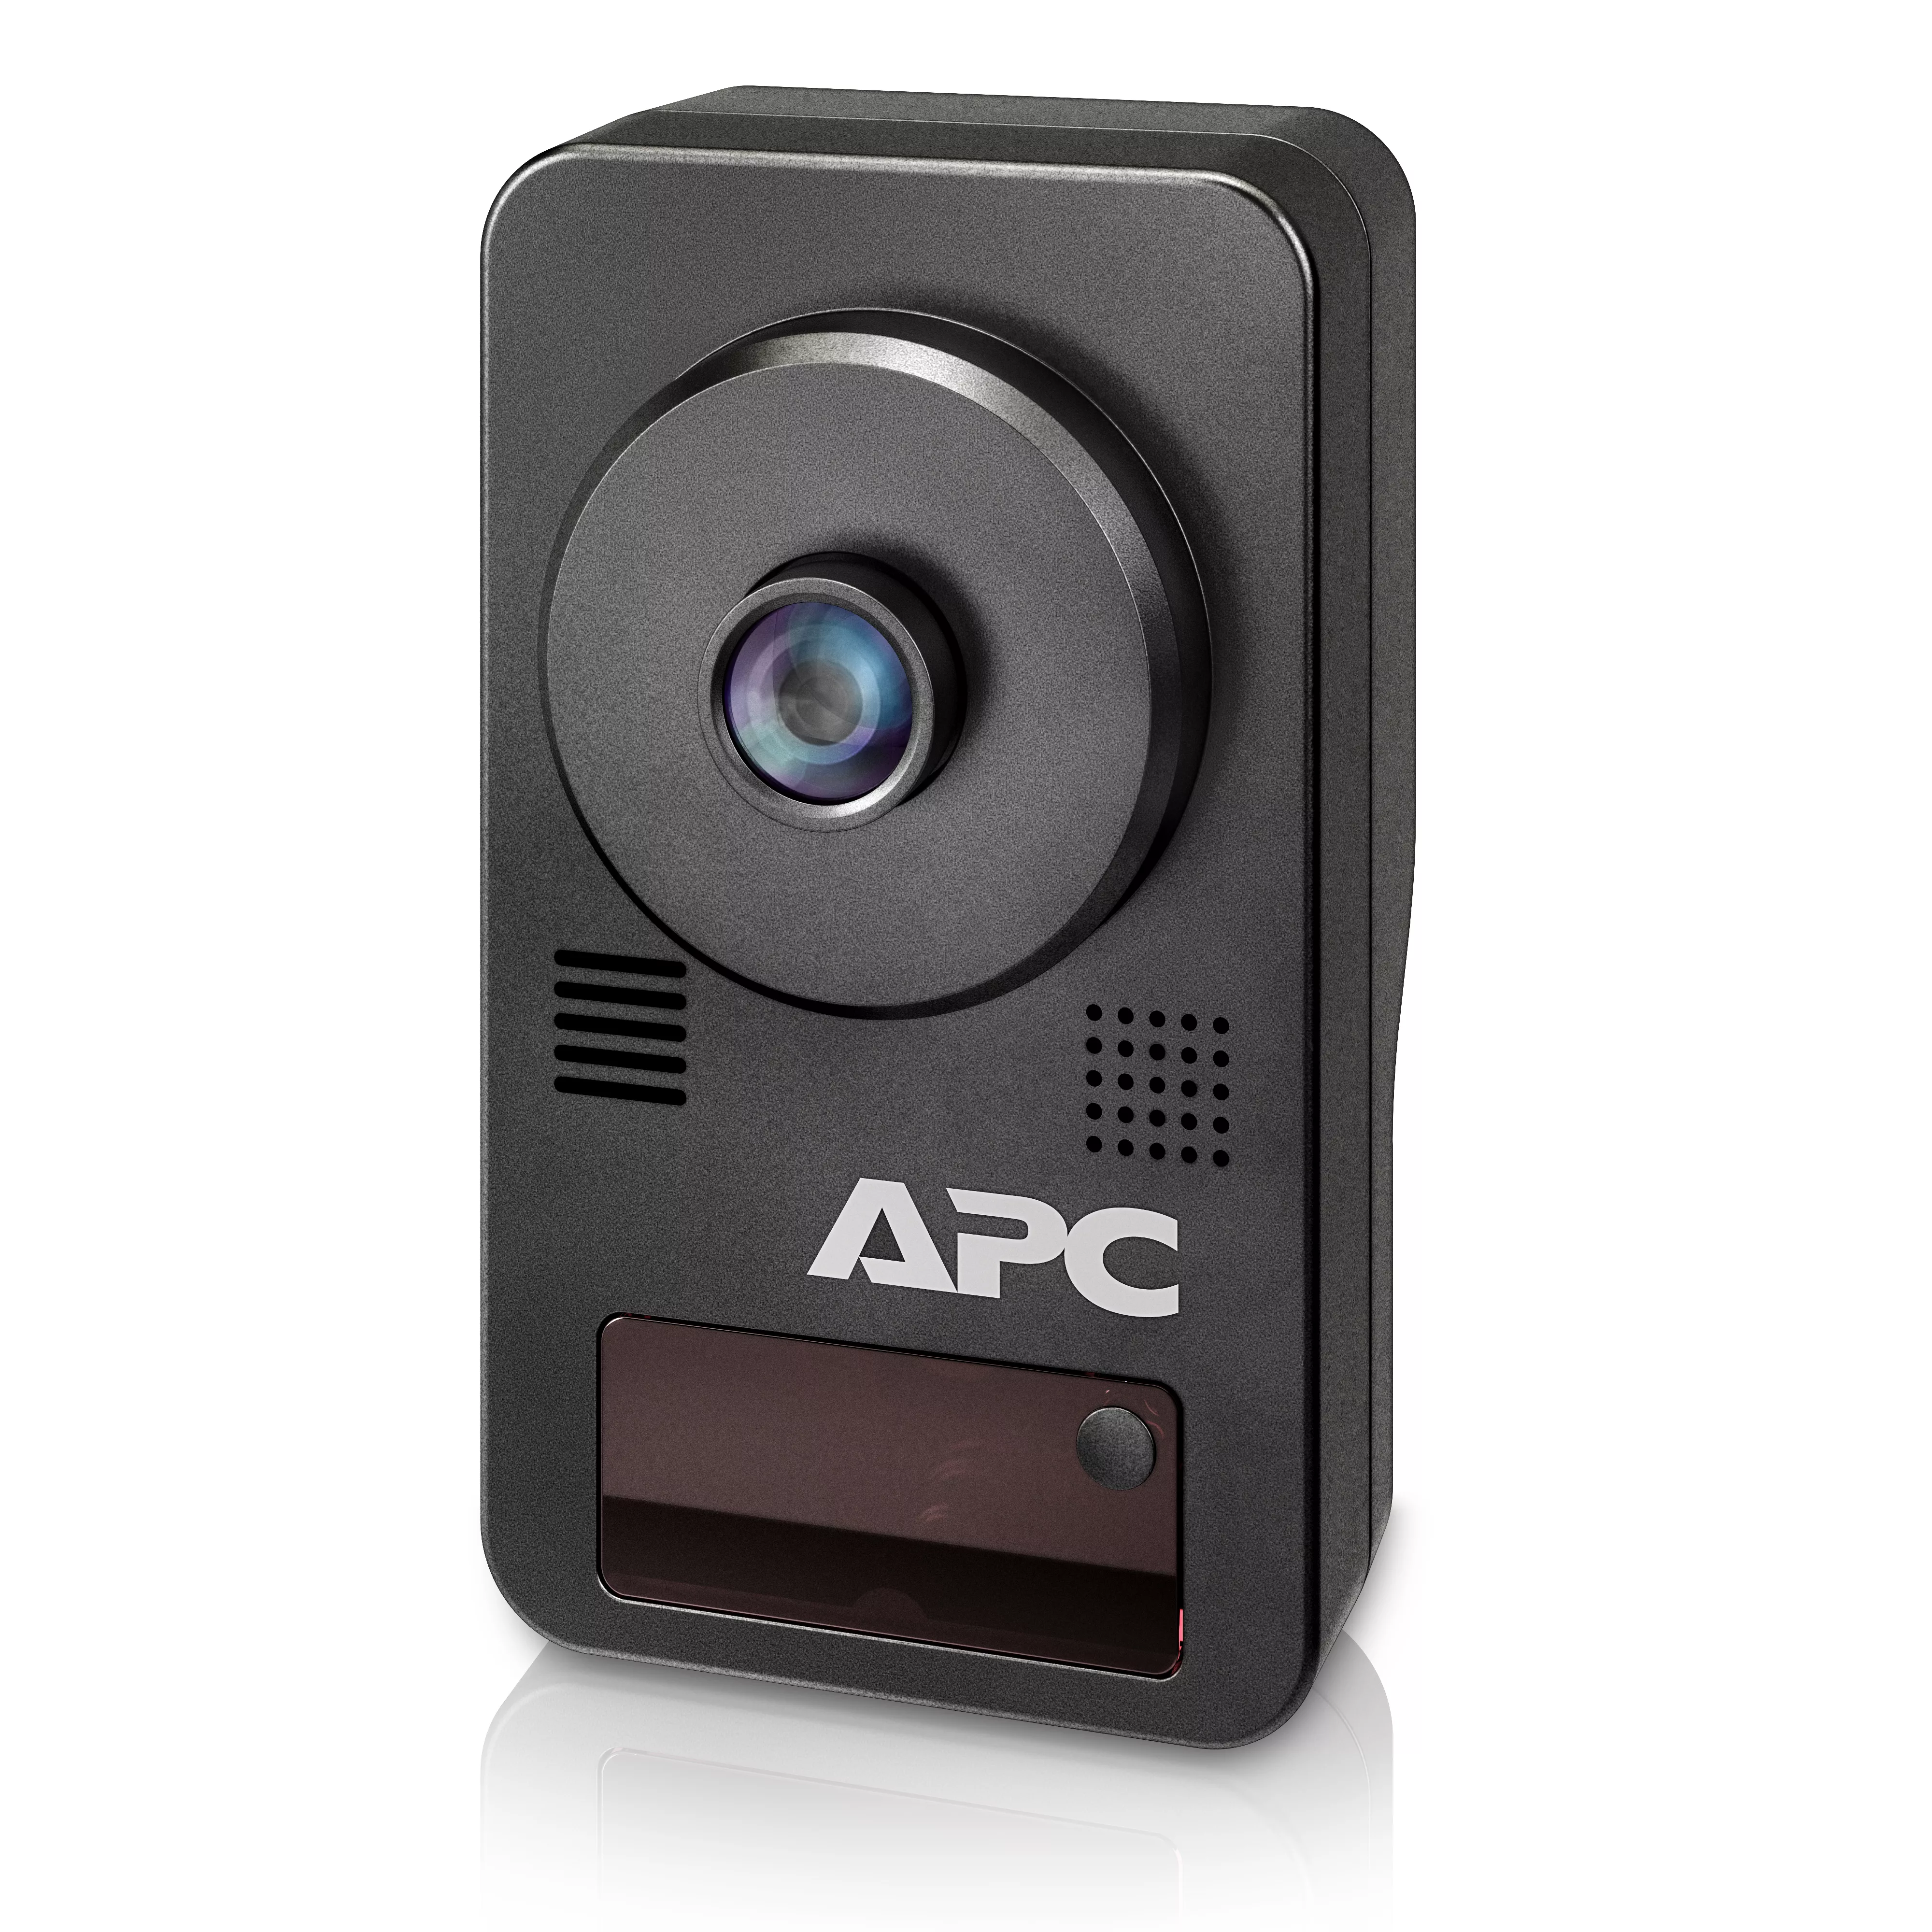 Revendeur officiel Accessoire Réseau APC NetBotz Camera Pod 165